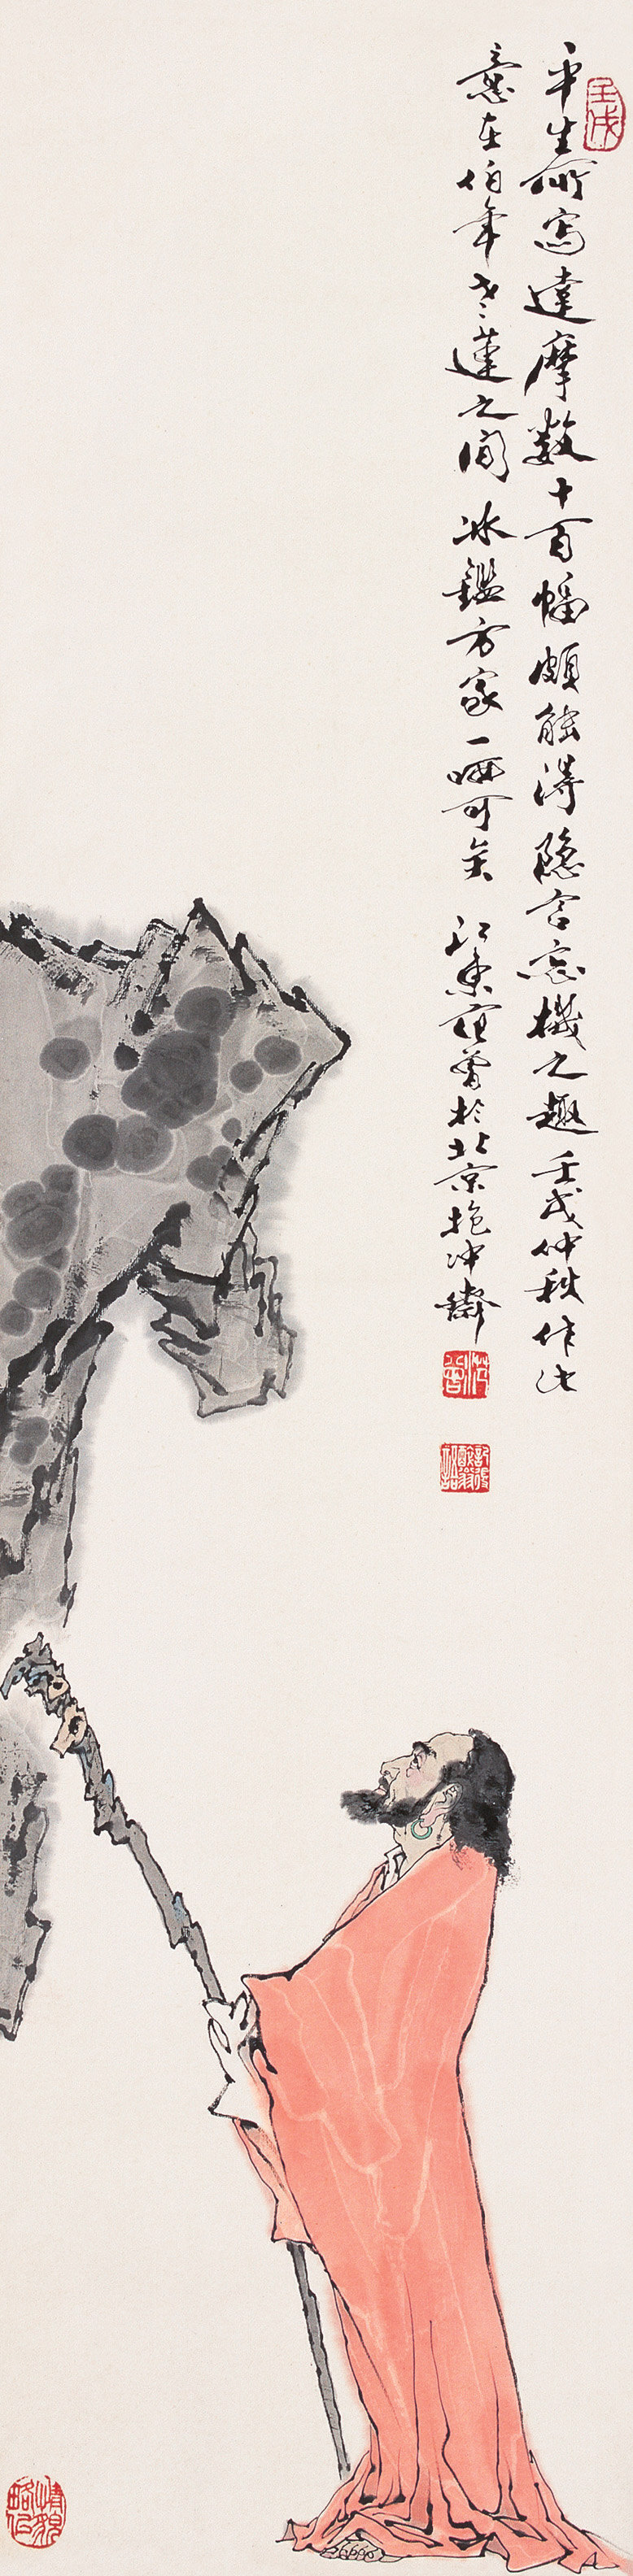 达摩面壁图 范曾 写意 人物 佛教人物 文化艺术 绘画书法 设计图库